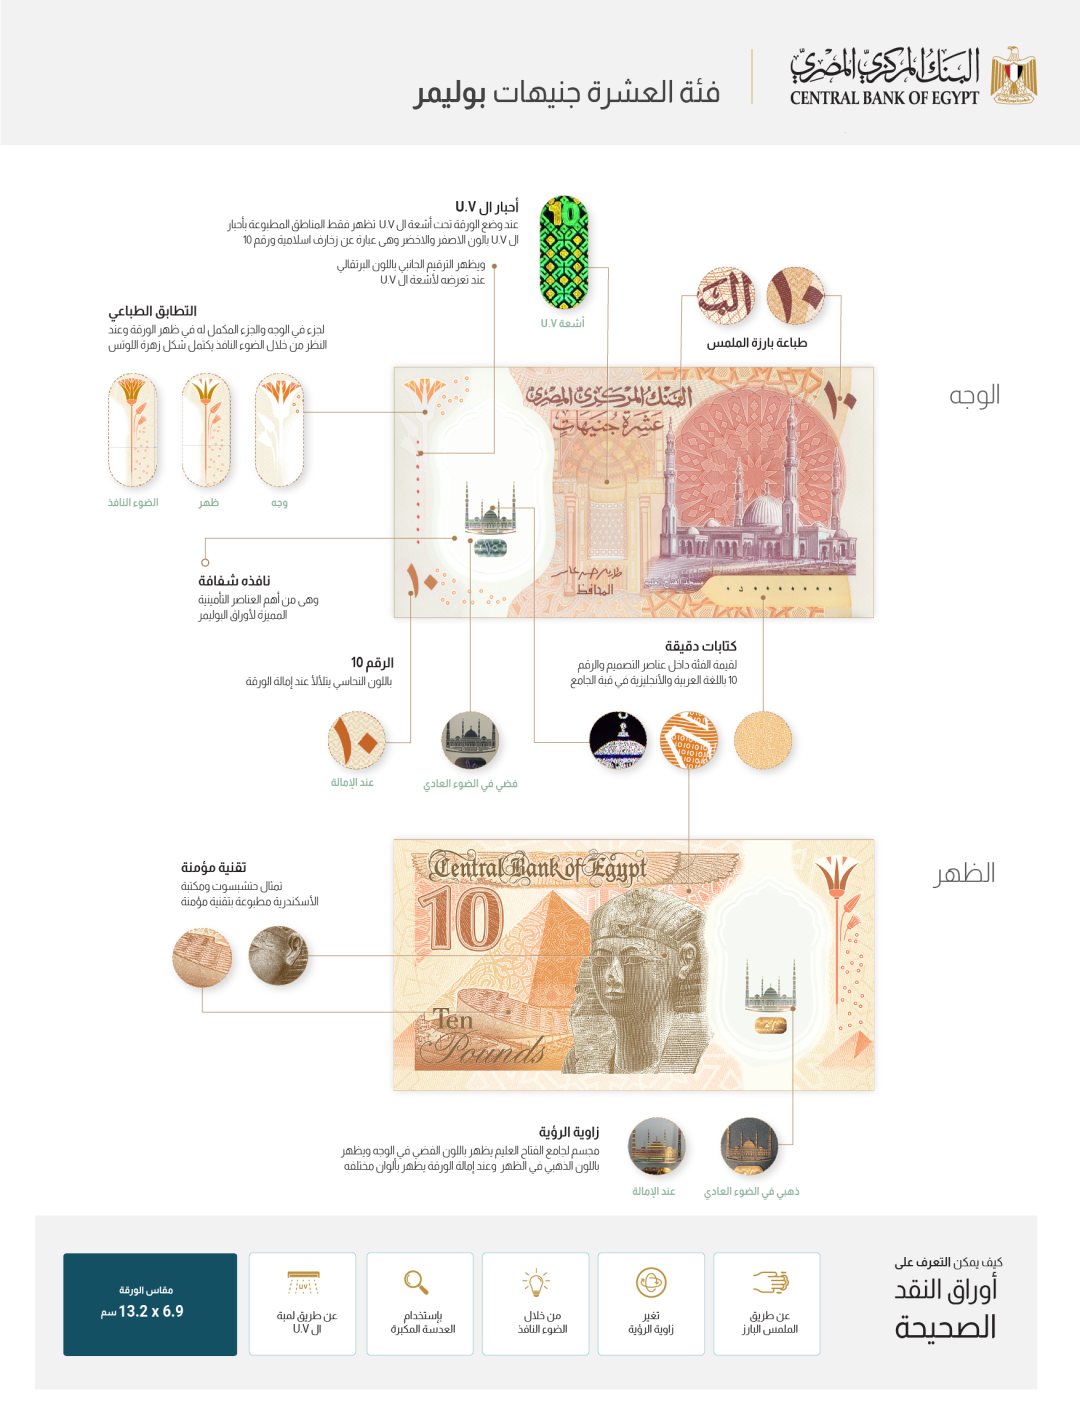 البنك المركزي يطرح أول عملة بلاستيكية في السوق المصري